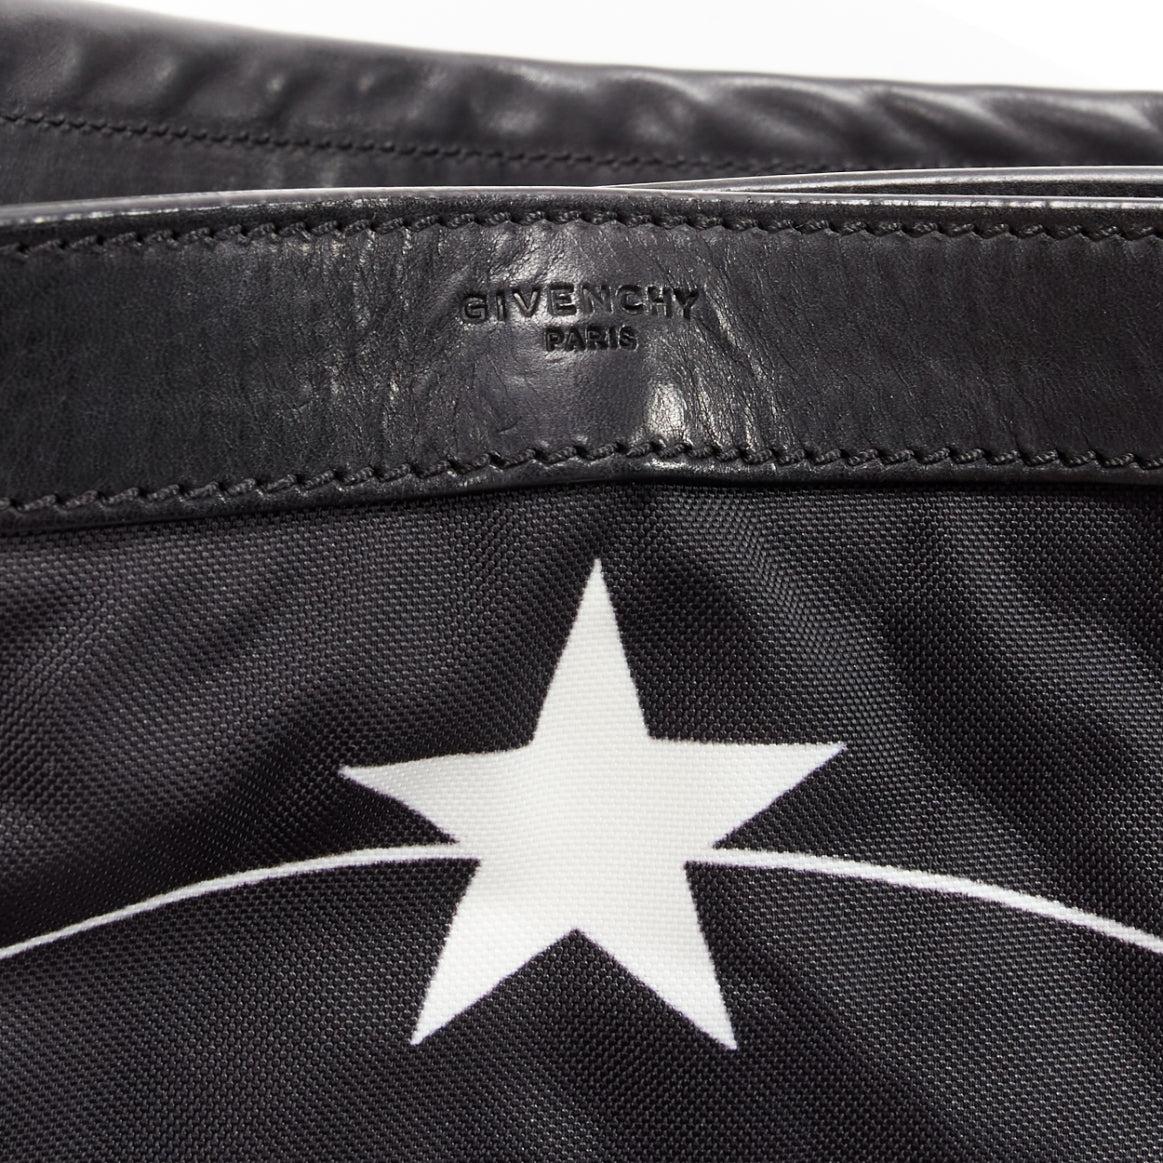 GIVENCHY Riccardo Tisci Monkey Brothers Nightingale nylon leather shoulder bag For Sale 5